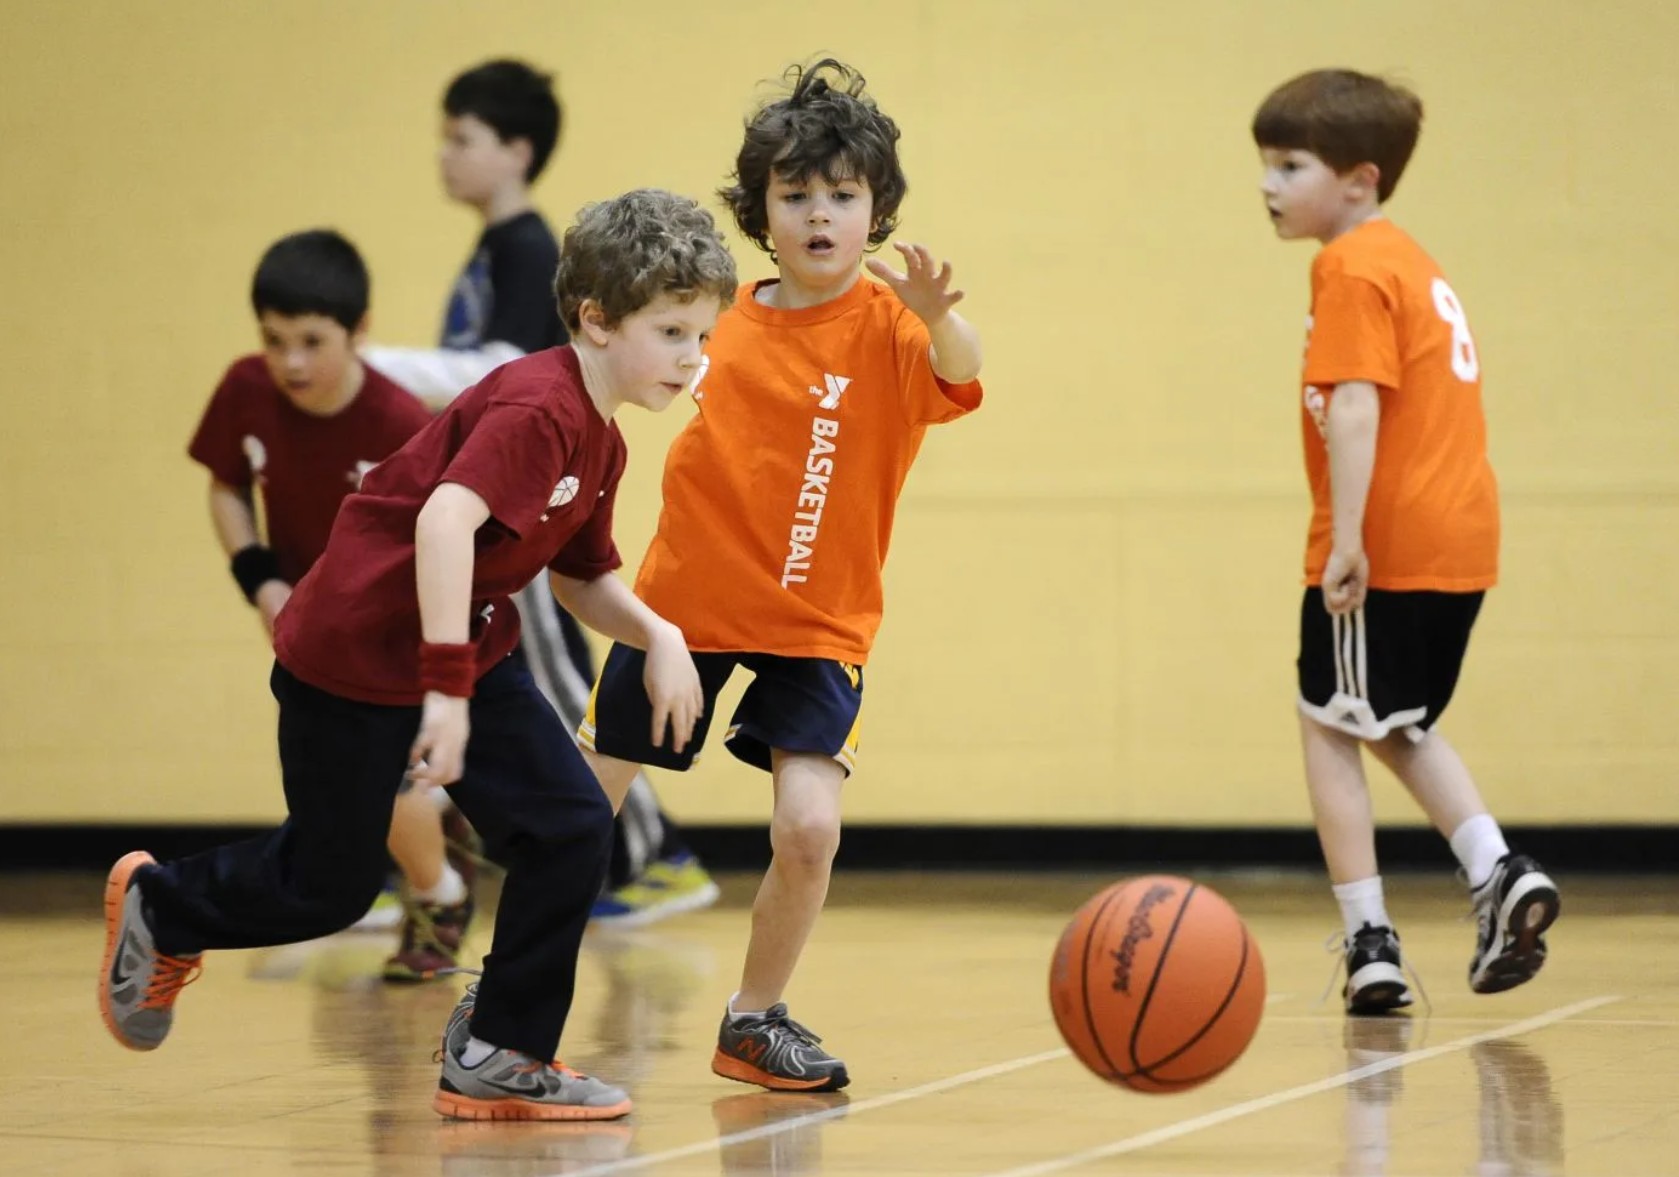 Детях fora. Баскетбол дети. Дети играющие в баскетбол. Спортивные игры для детей. Спорт дети.